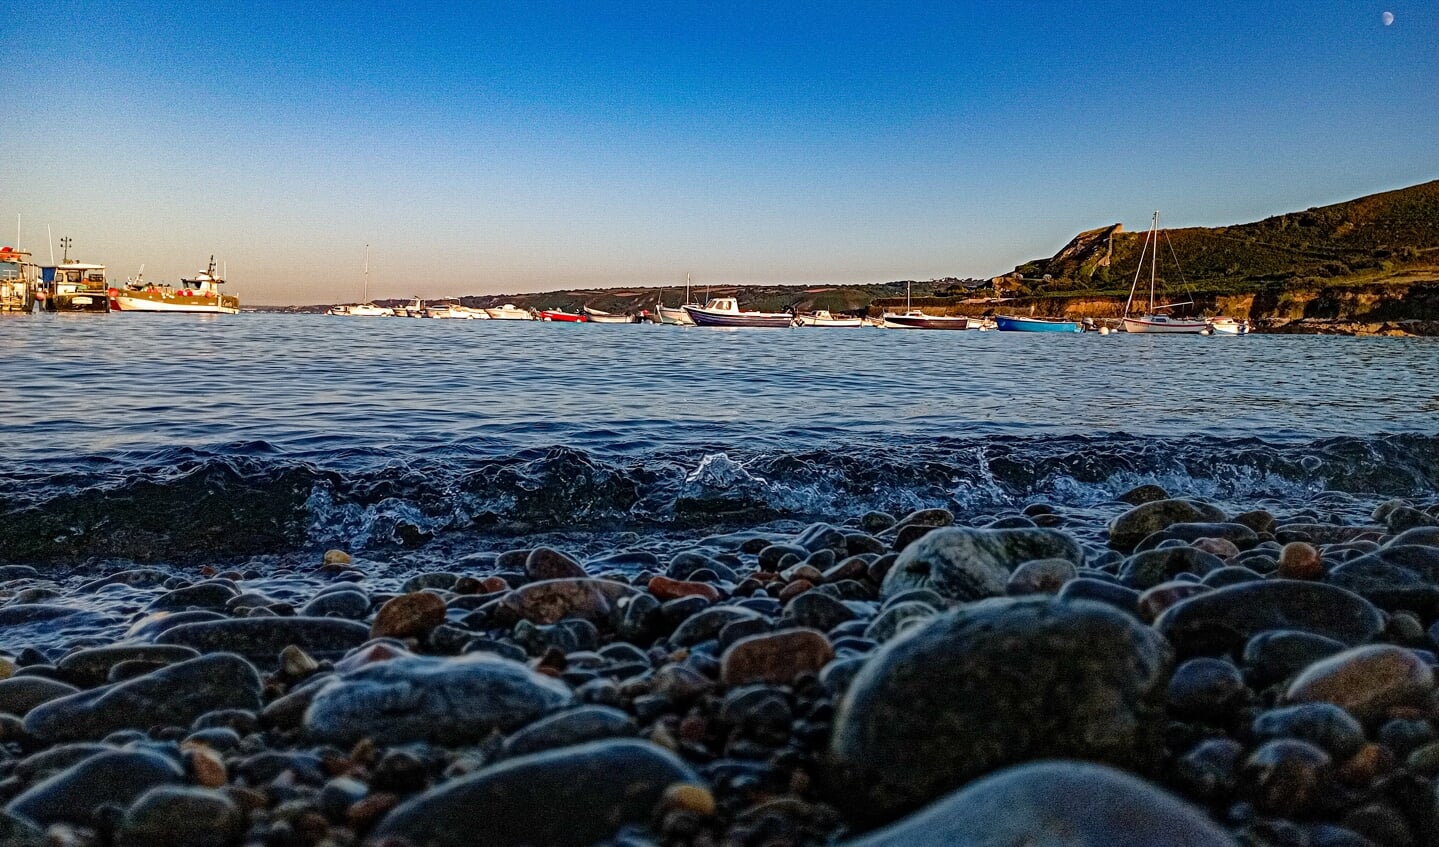 Dit jaar op vakantie in Normandië zag ik de zee en dacht ik dat ziet er wel heel mooi uit! Daarom heb ik deze foto gemaakt zo dicht bij het water, alle kleuren passen zo goed bij elkaar.